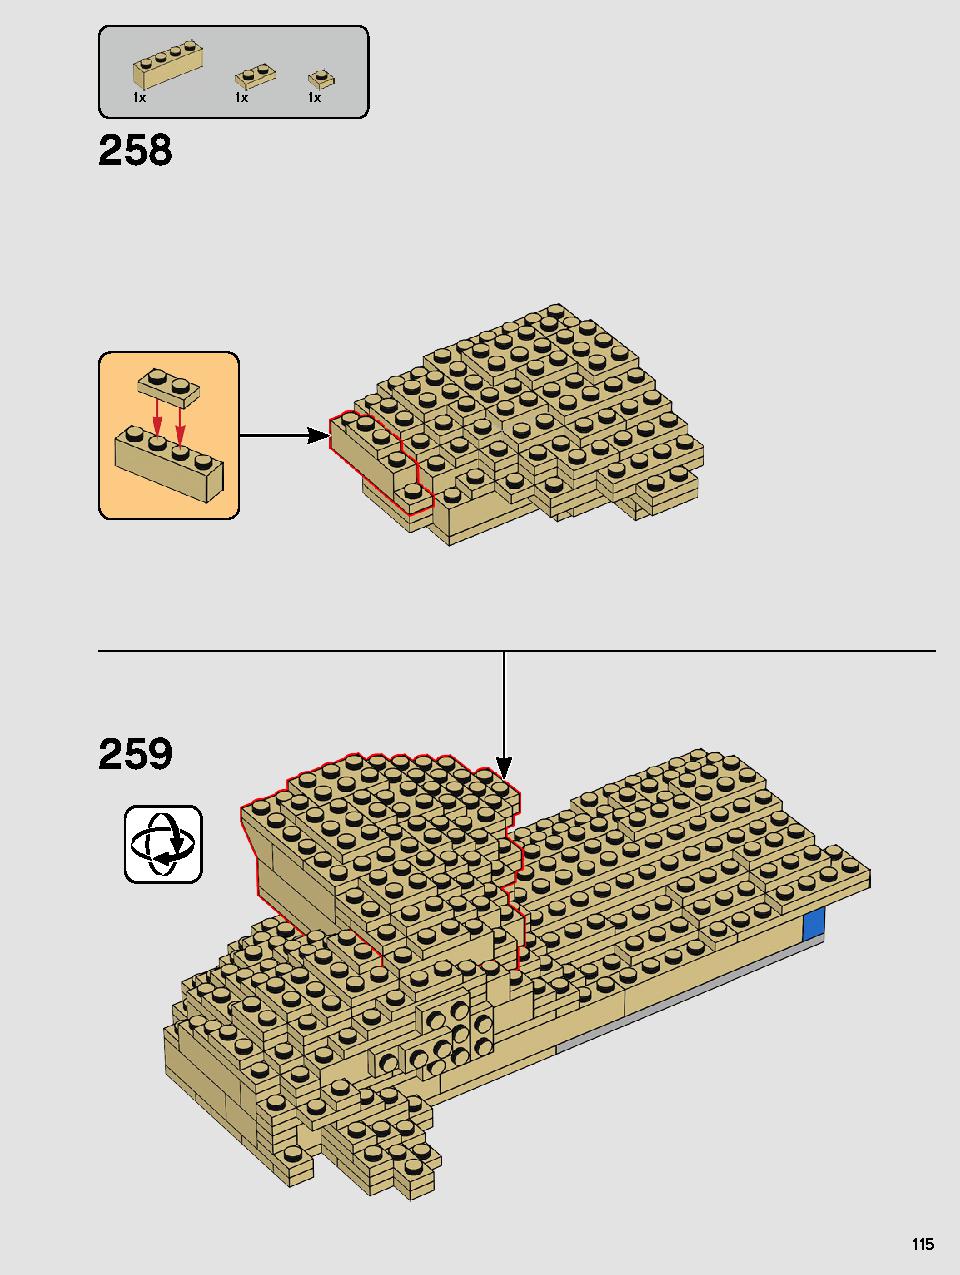 ヨーダ™ 75255 レゴの商品情報 レゴの説明書・組立方法 115 page